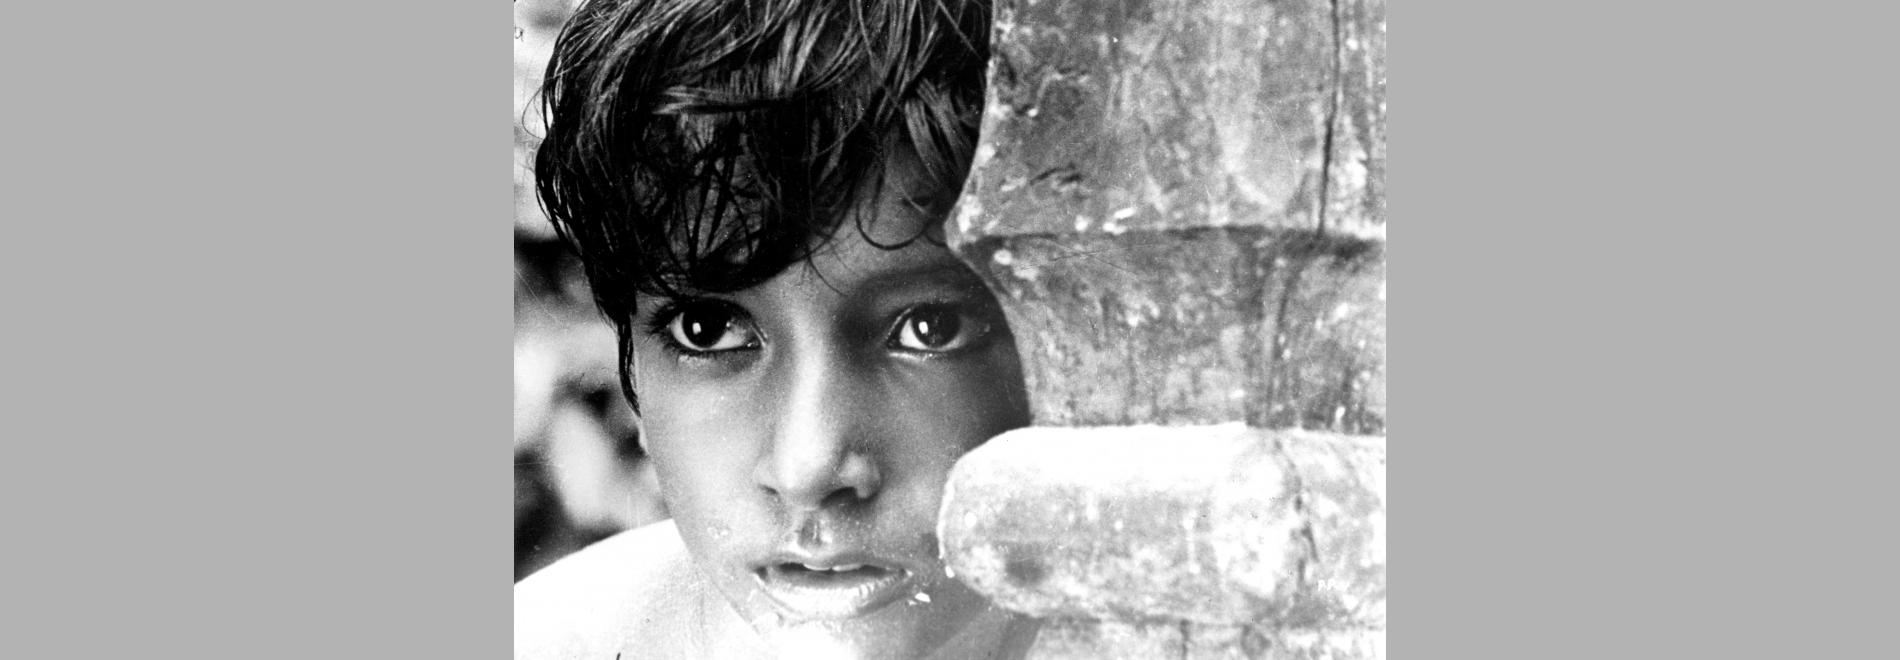 Pather Panchali (Satyajit Ray, 1955)